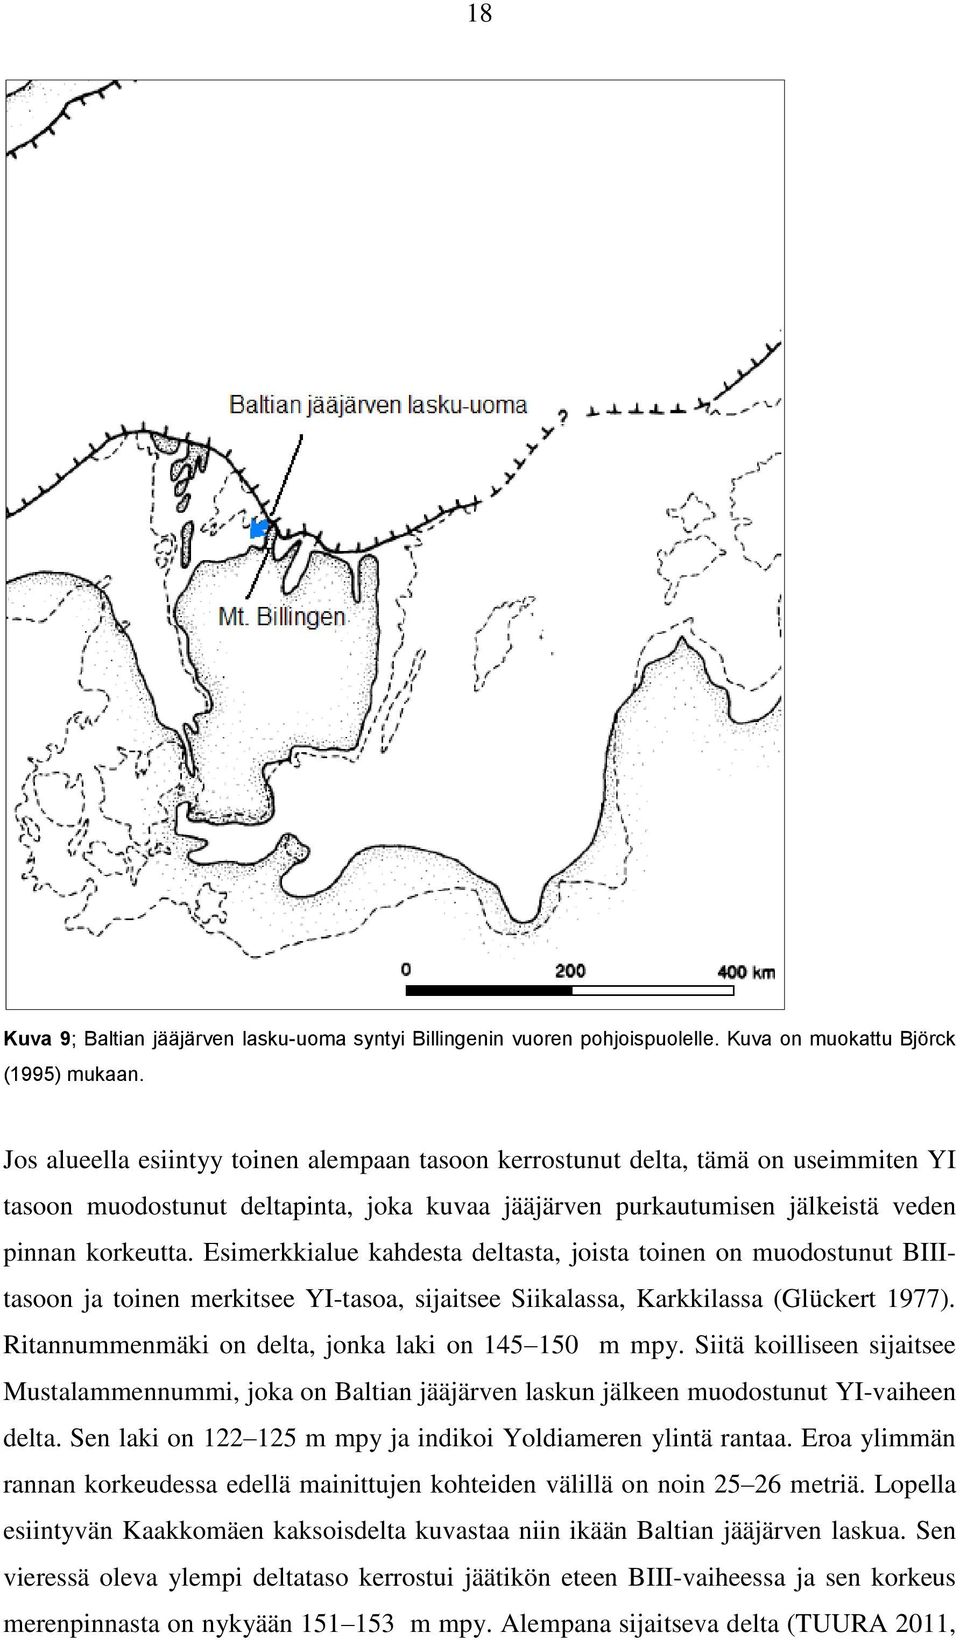 Esimerkkialue kahdesta deltasta, joista toinen on muodostunut BIIItasoon ja toinen merkitsee YI-tasoa, sijaitsee Siikalassa, Karkkilassa (Glückert 1977).